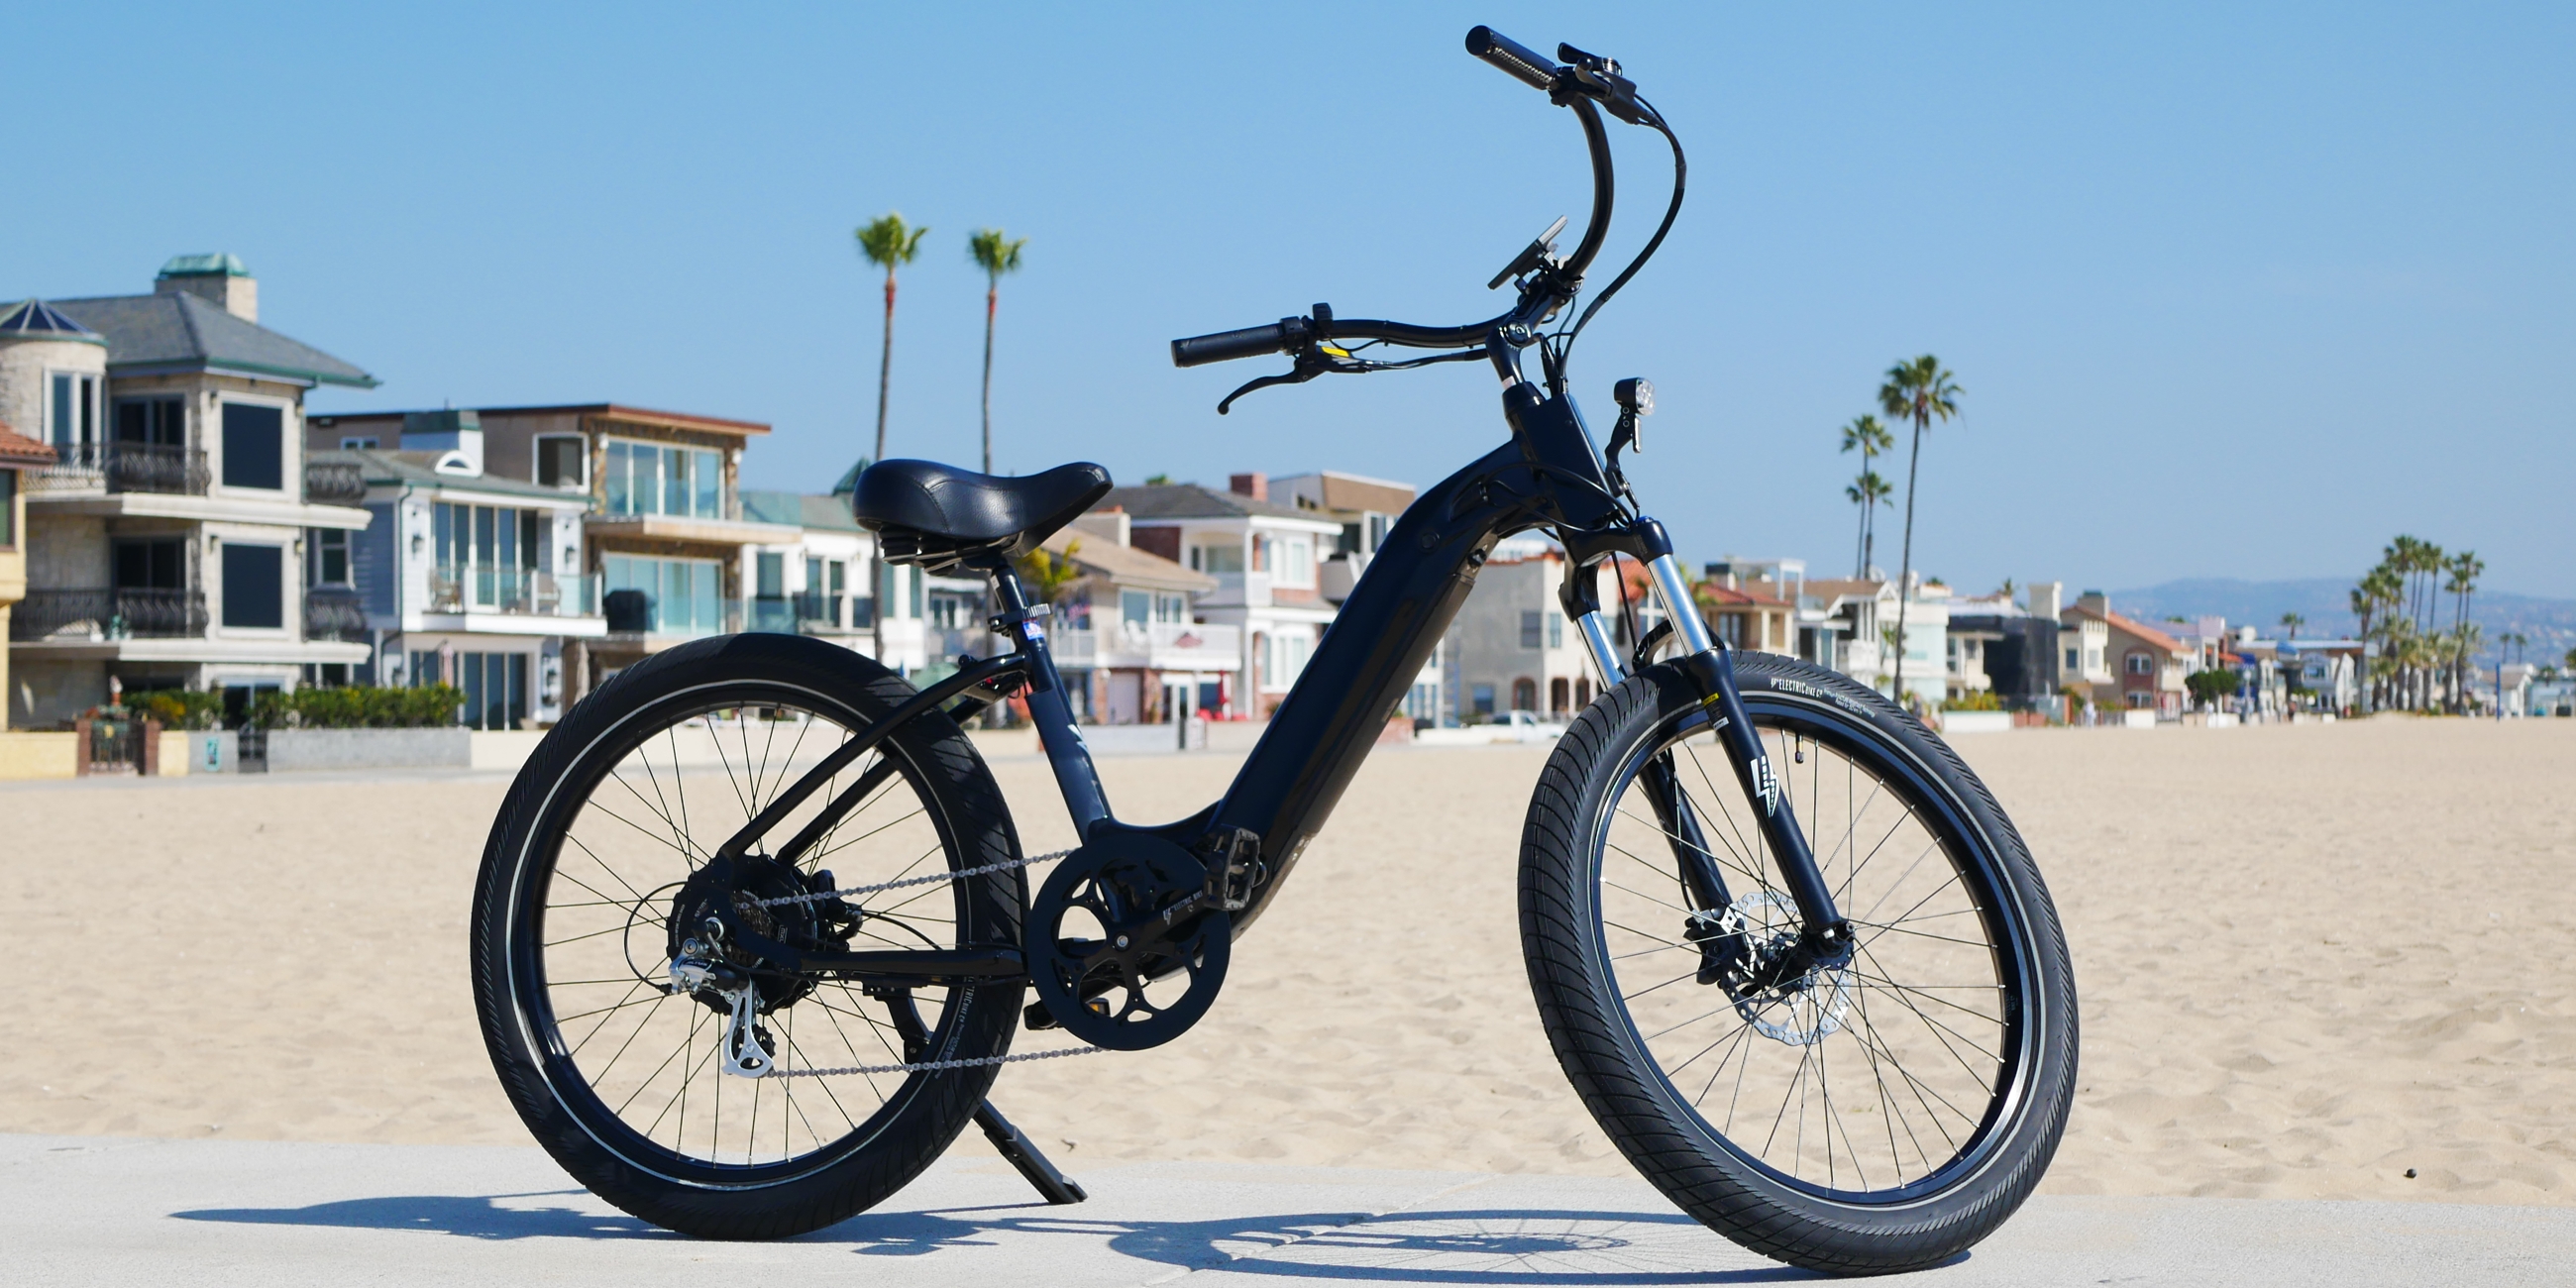 ebc electric bikes